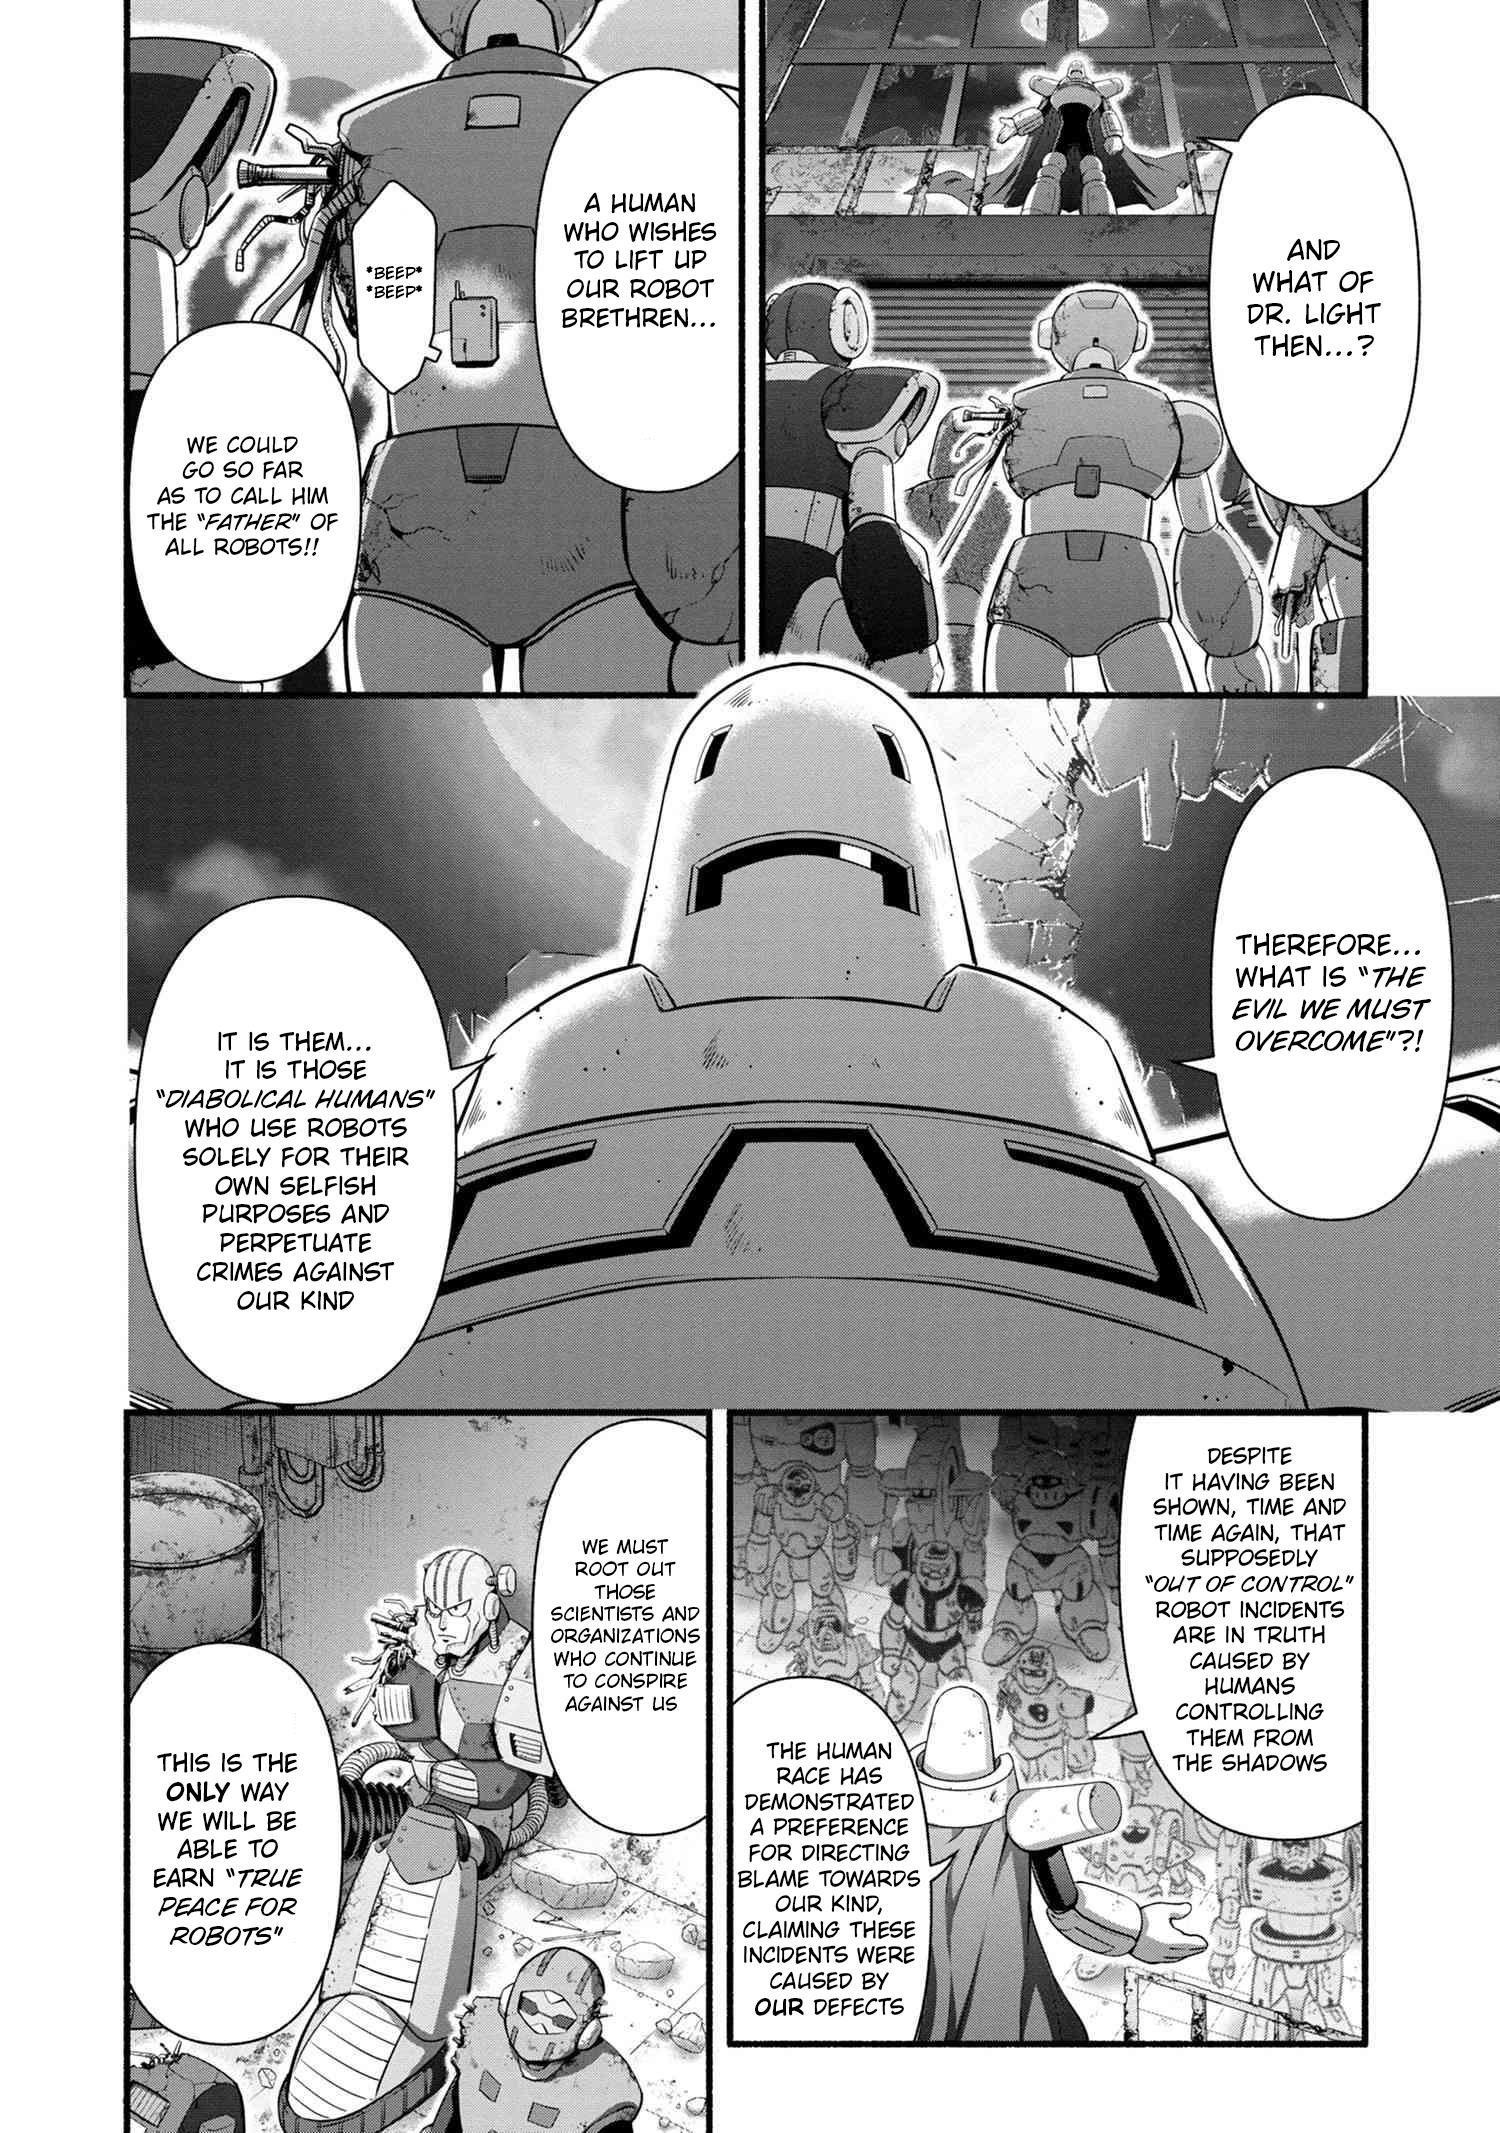 Rockman-San - Page 2